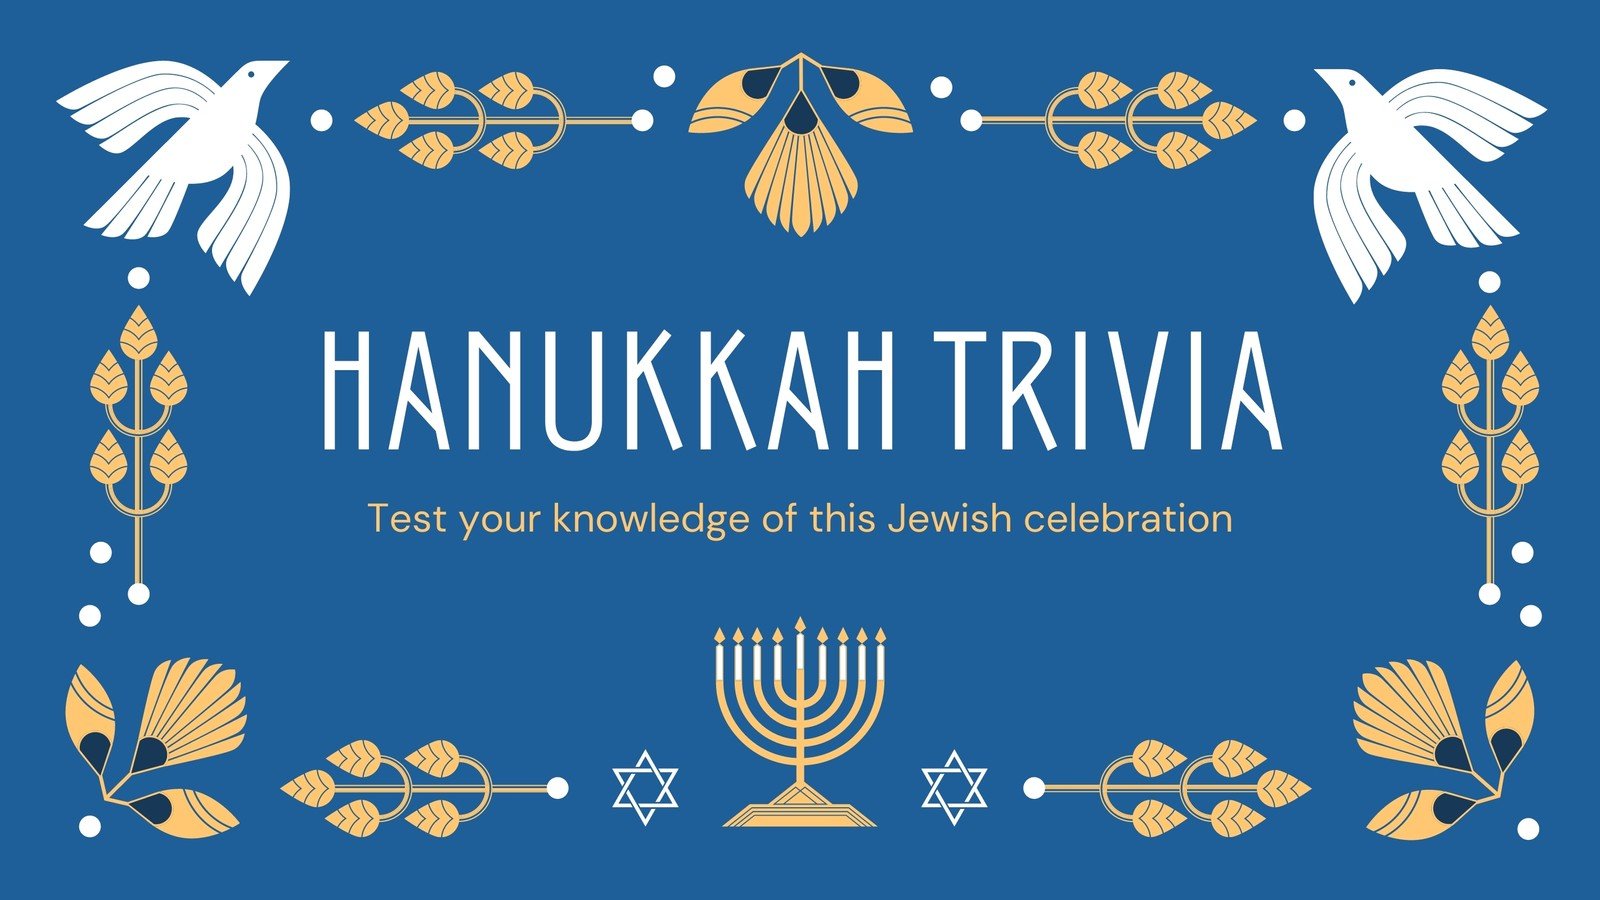 Printable Menorah Magic Hanukkah Gift Tags (Instant Download)